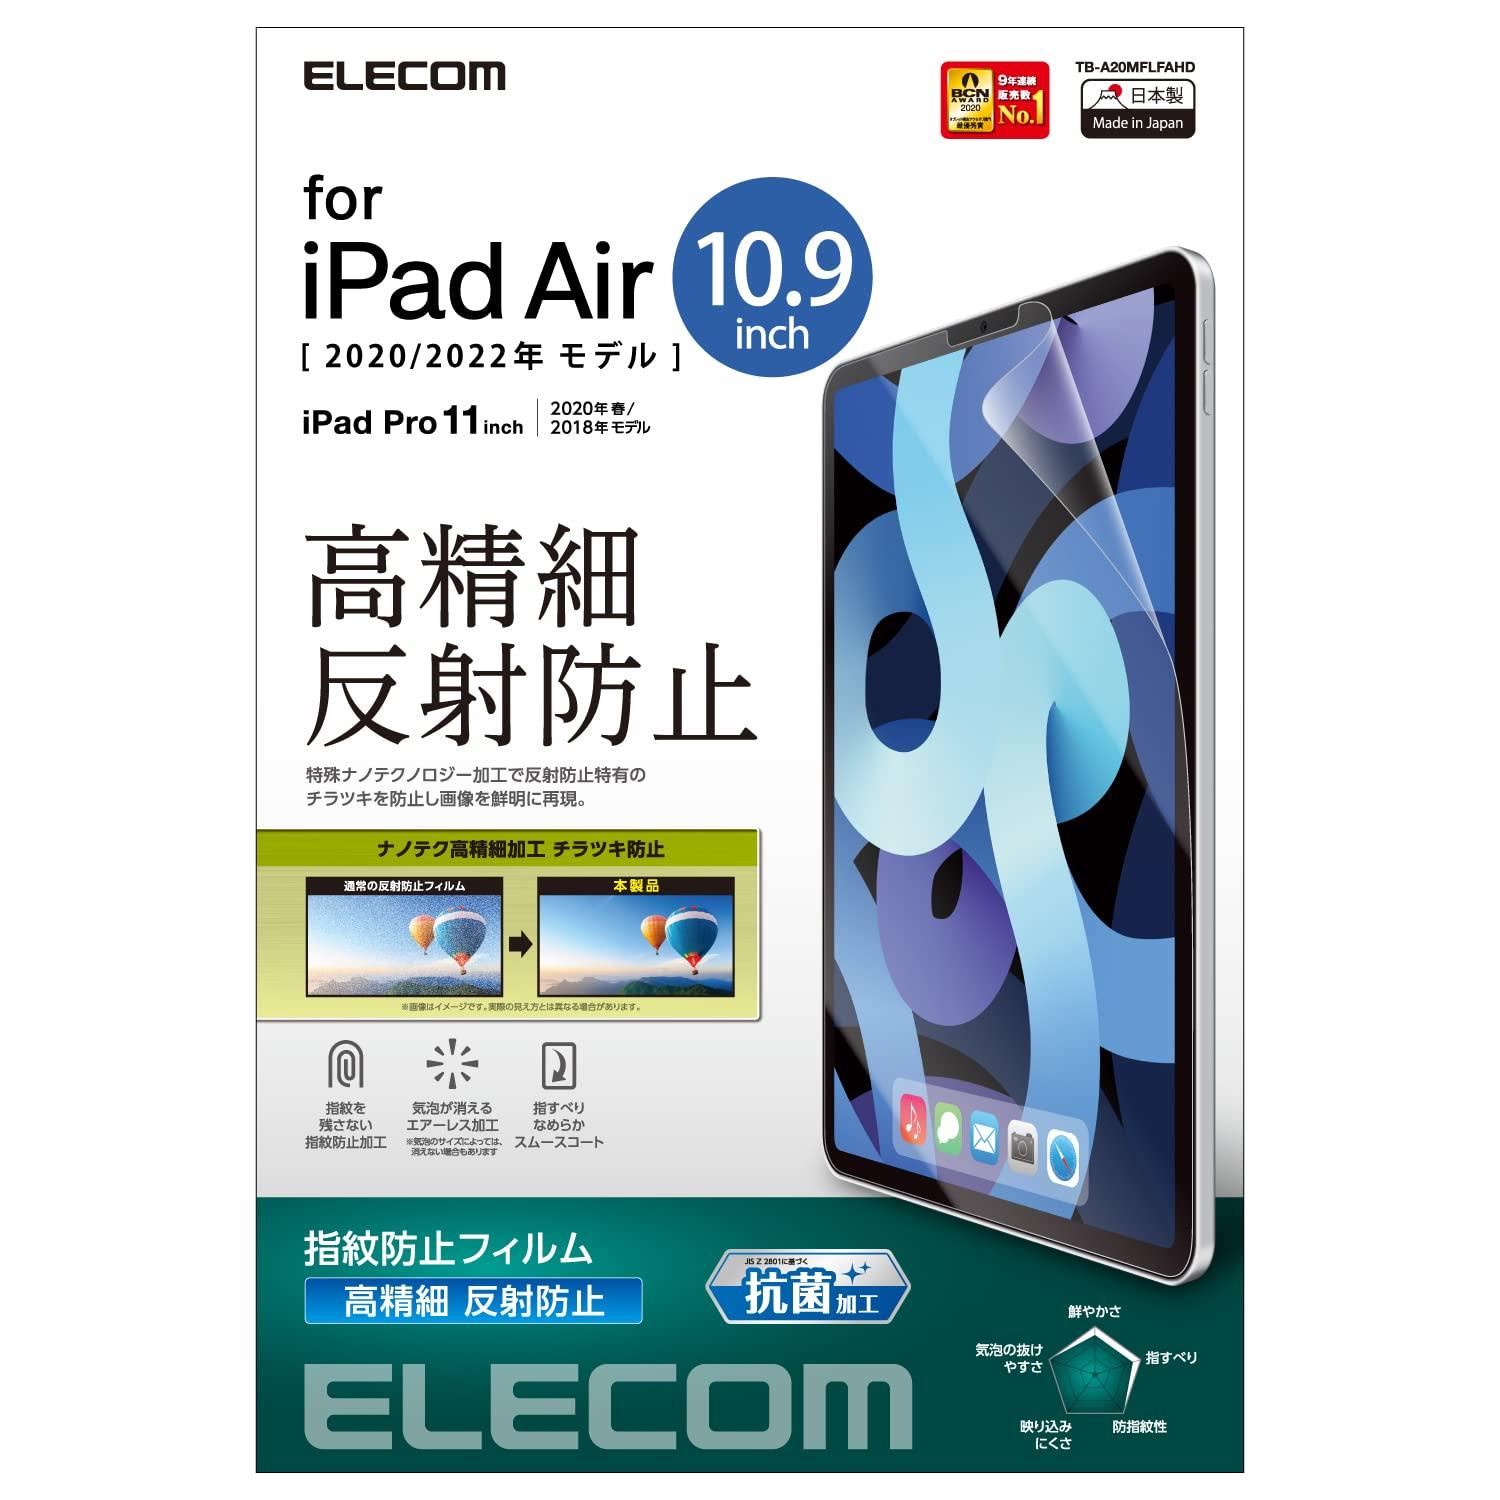 iPad Air 10.9C`(4/2020Nf)ptB  wh~ ˖h~ / TB-A20MFLFAHD